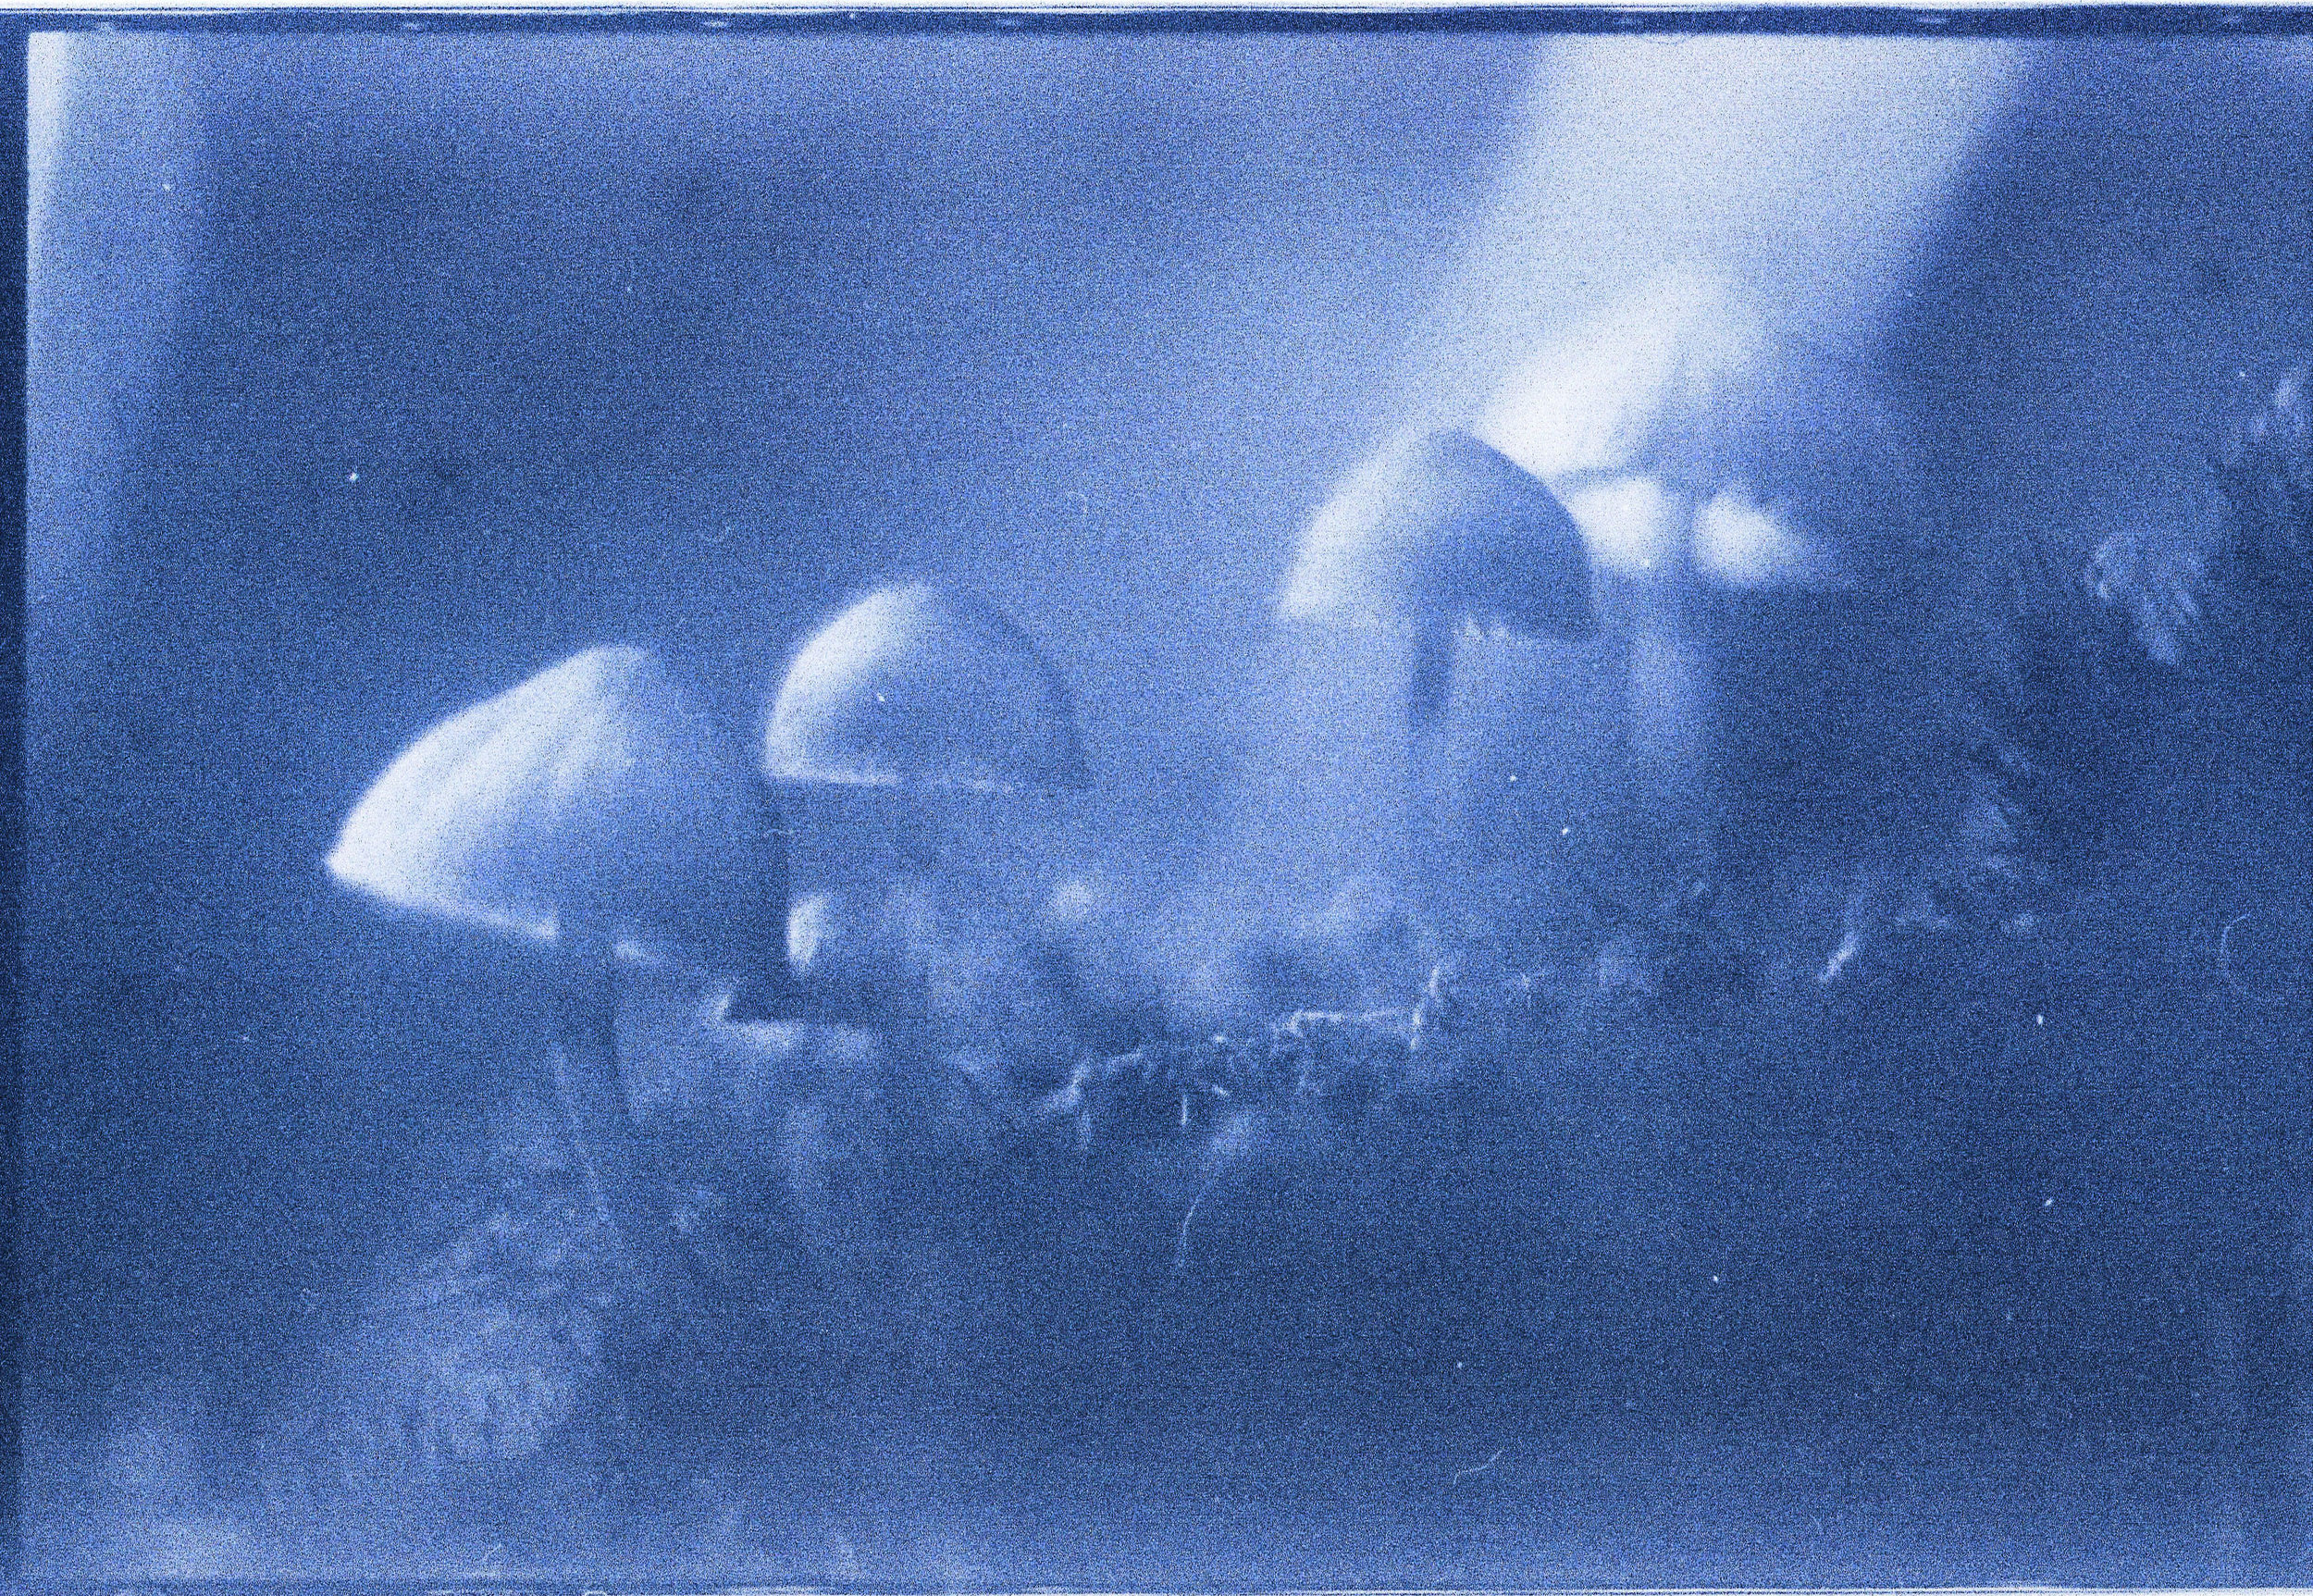 Mystic Mushrooms | Fujica ST701 | AGFA CT18 | Kali Herdman